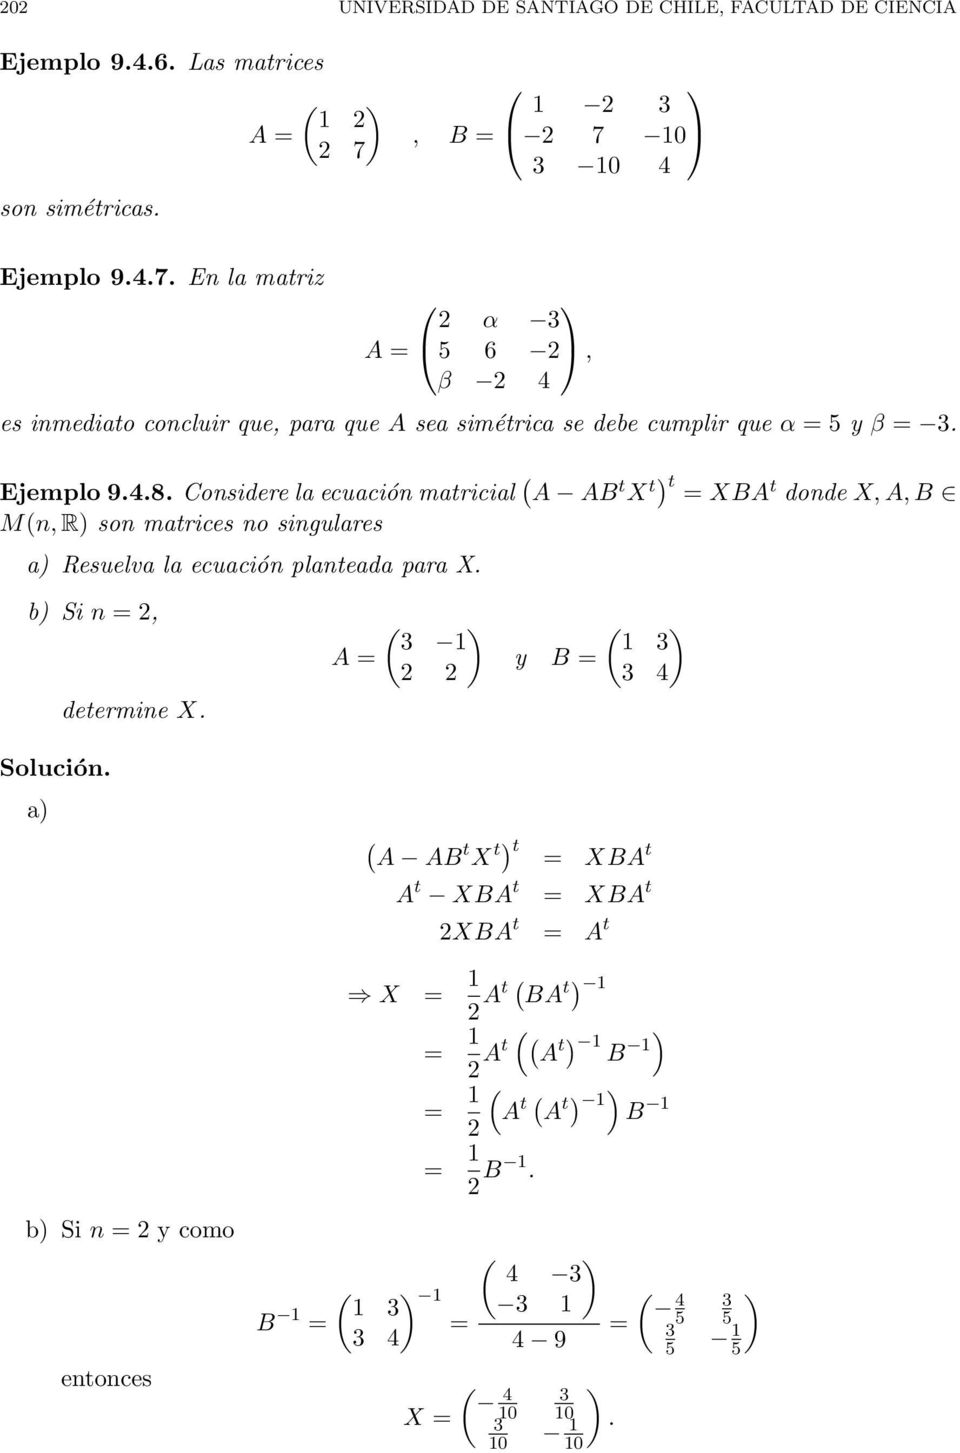 Considere la ecuación matricial ( A AB t X t t XBA t donde X, A, B M(n, R son matrices no singulares a Resuelva la ecuación planteada para X. b Si n 2, determine X.